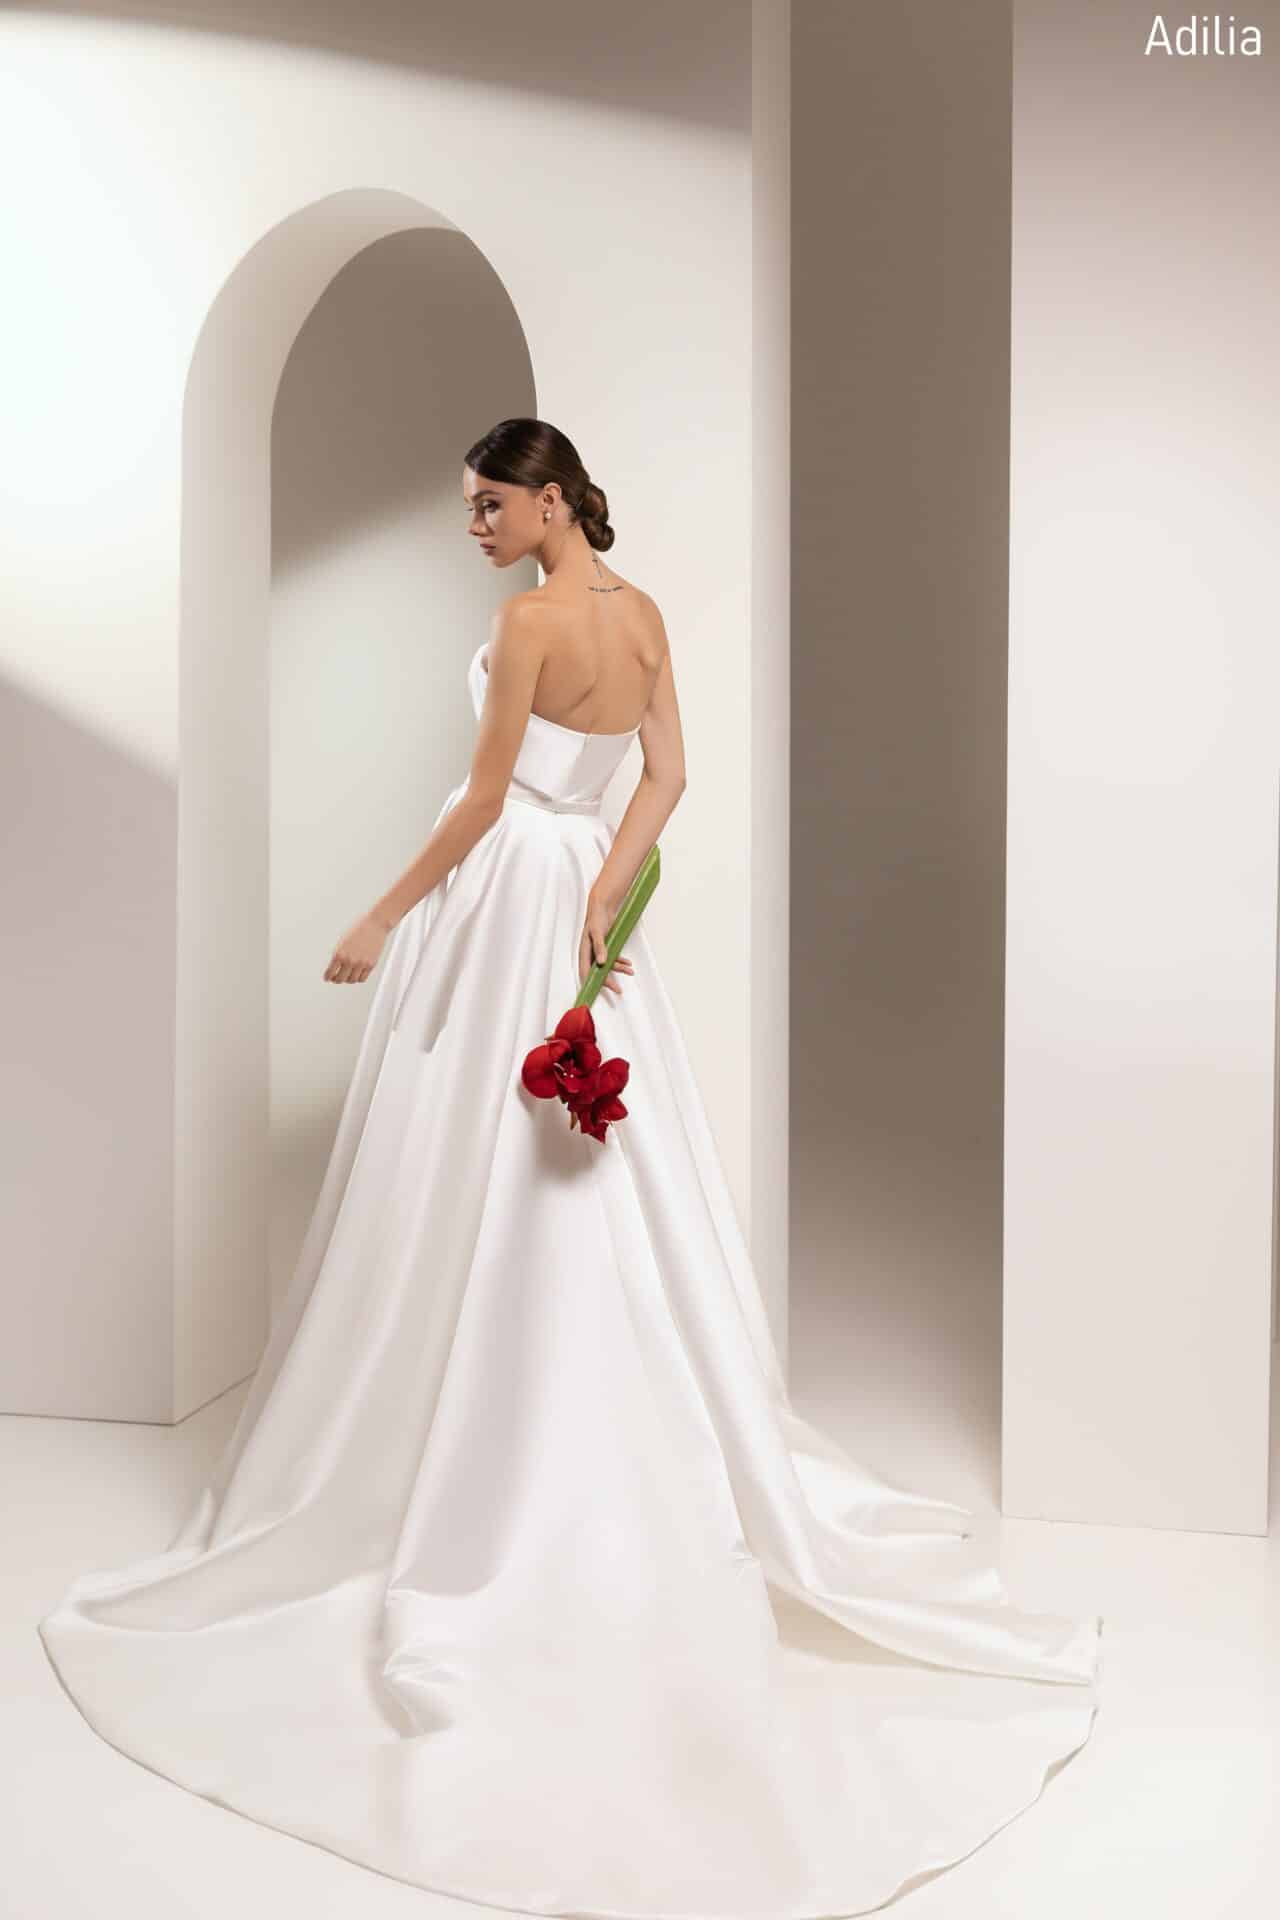 Brautkleid ohne Träger im klassischen Stil